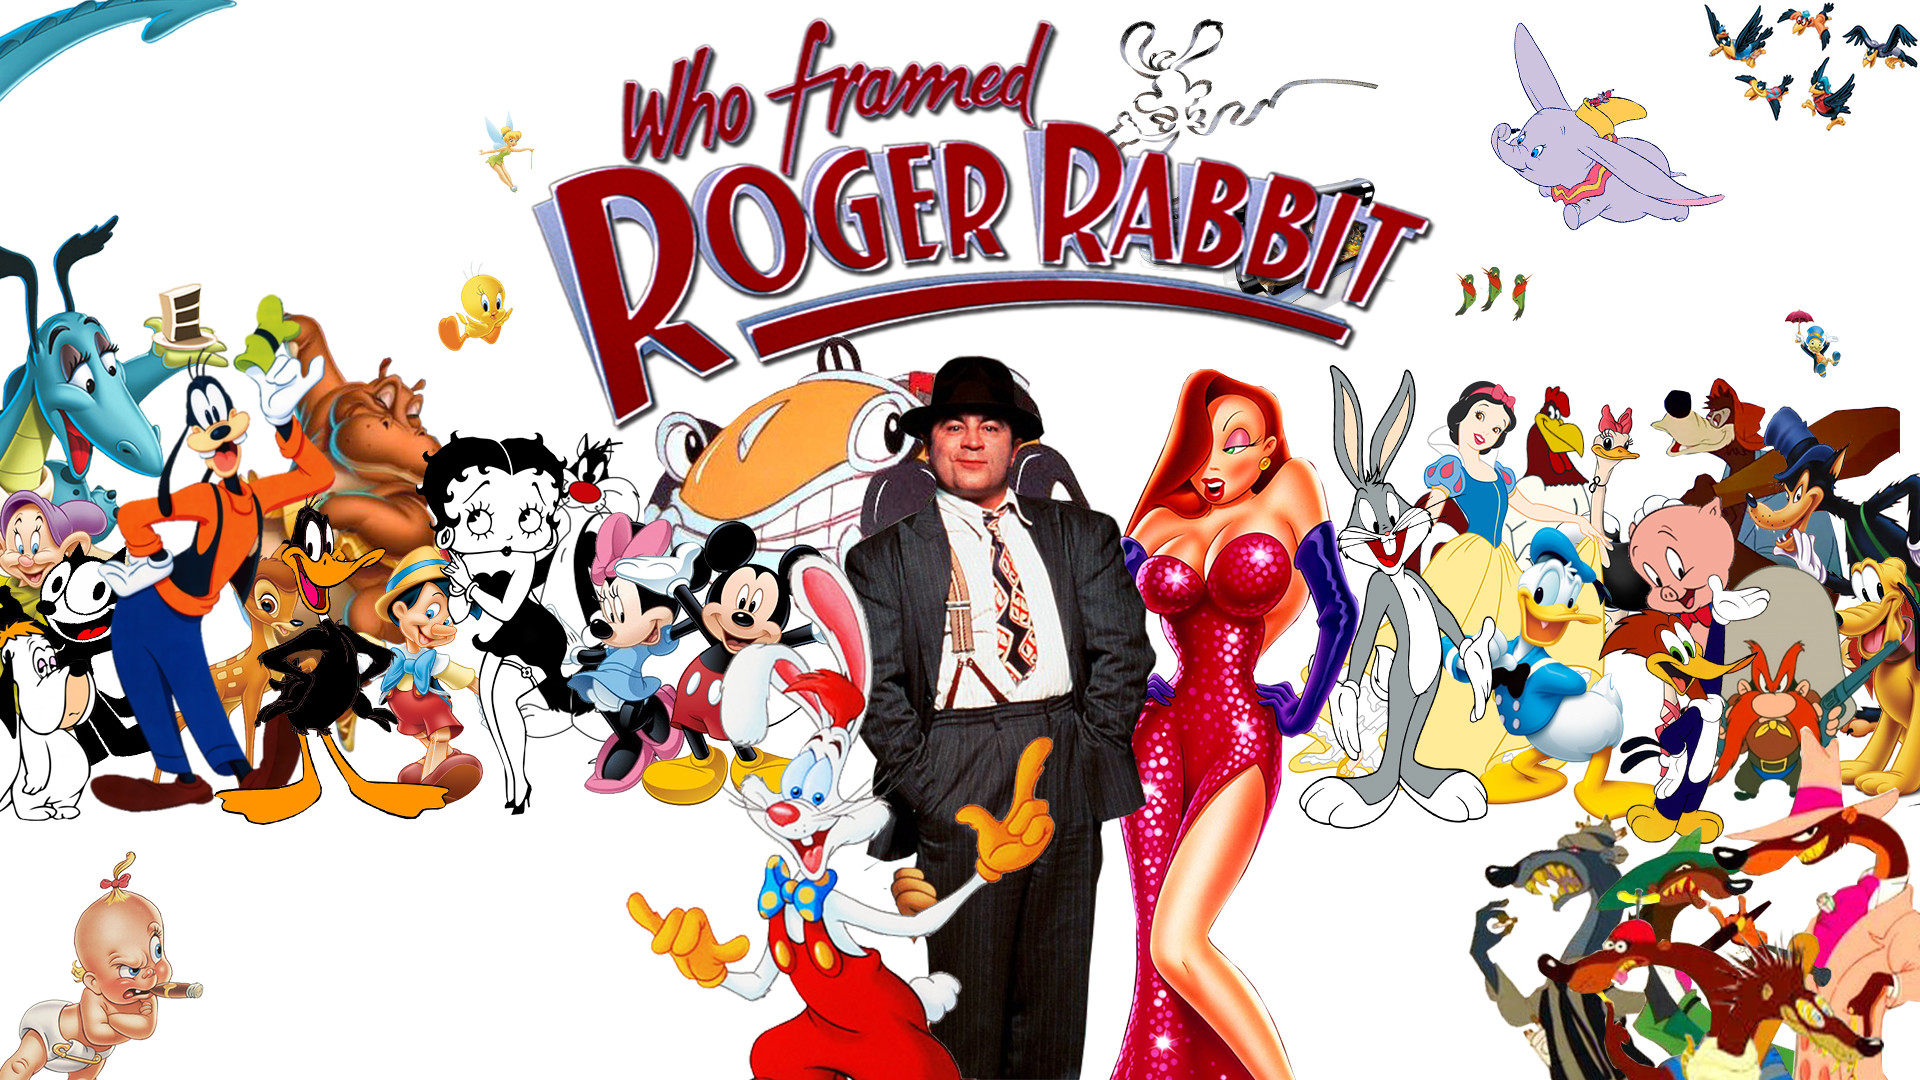 Roger Rabbit frame